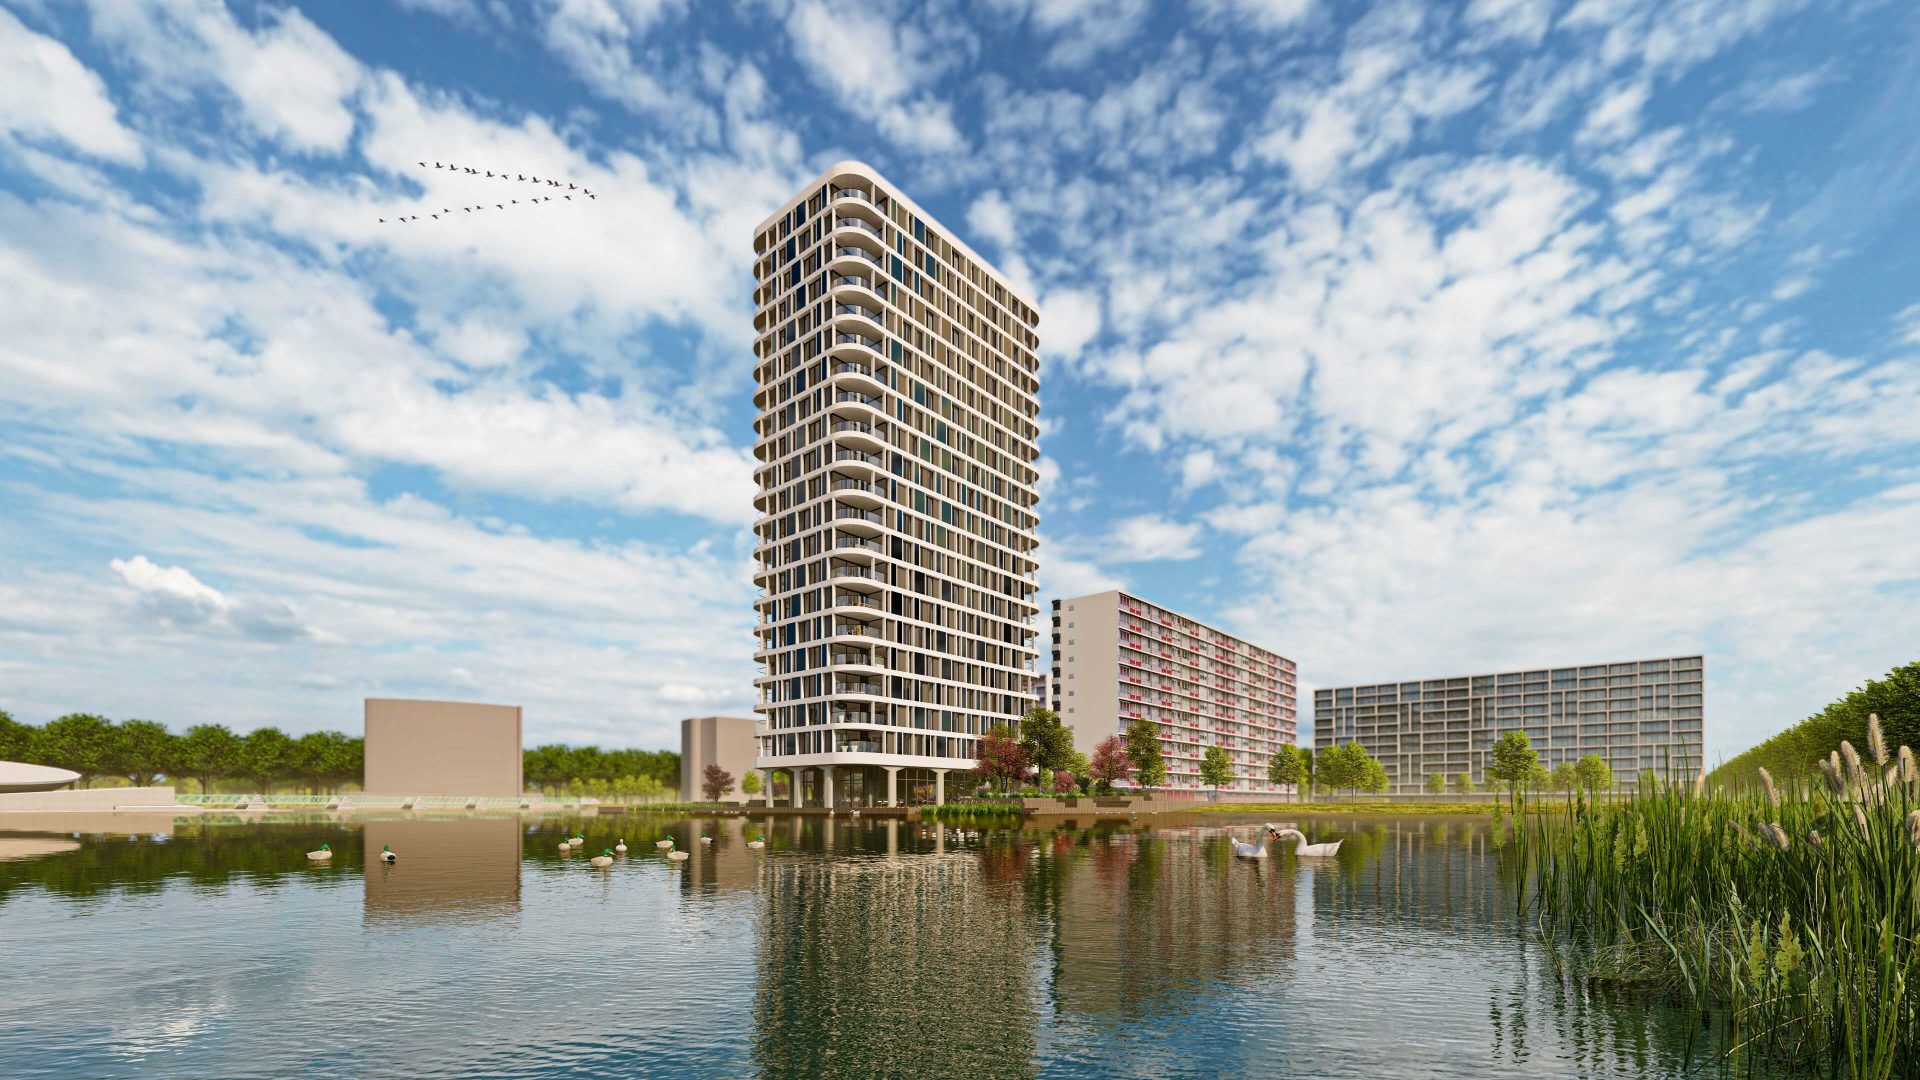 Foto: Tieleman Keukens nieuwbouwproject NBU Bernini Rotterdam 2022 1